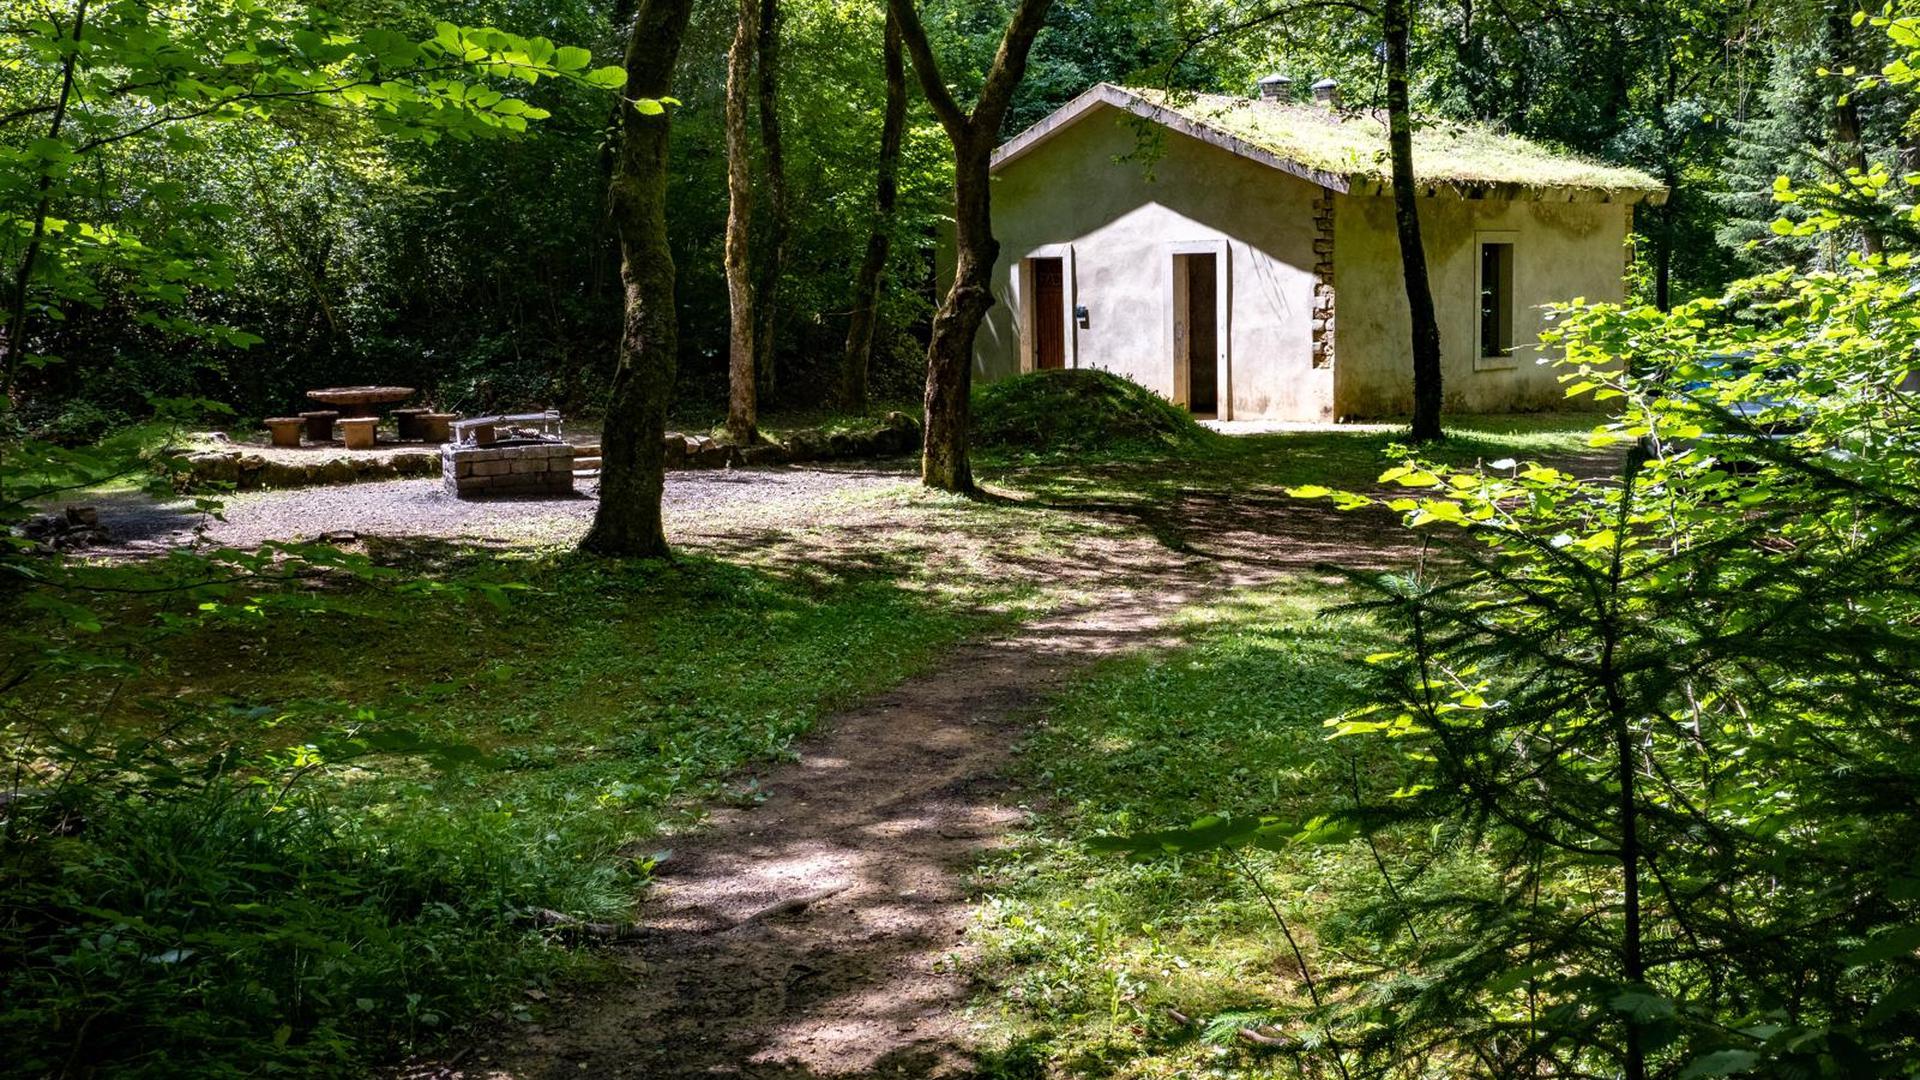 Lors du séjour dans la réserve Ellergronn, il est même possible de réserver la villa Rosati pour une nuit dans les bois.